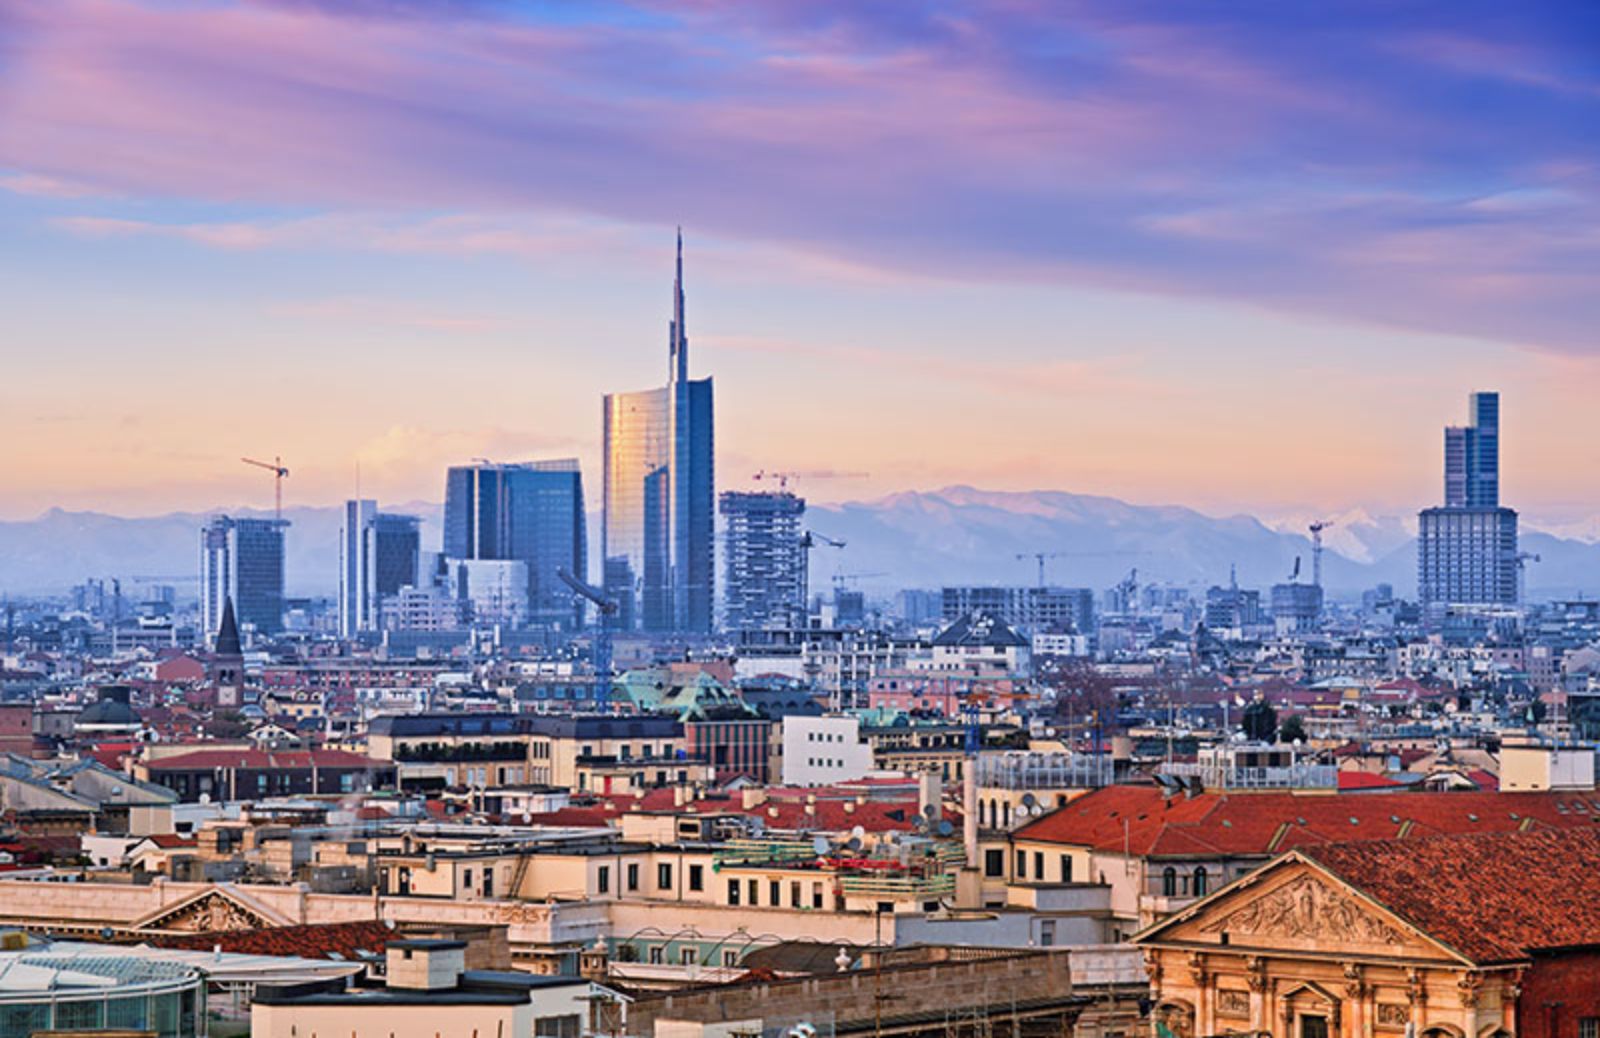 Bosco Verticale & co.: i 5 grattacieli più belli di Milano